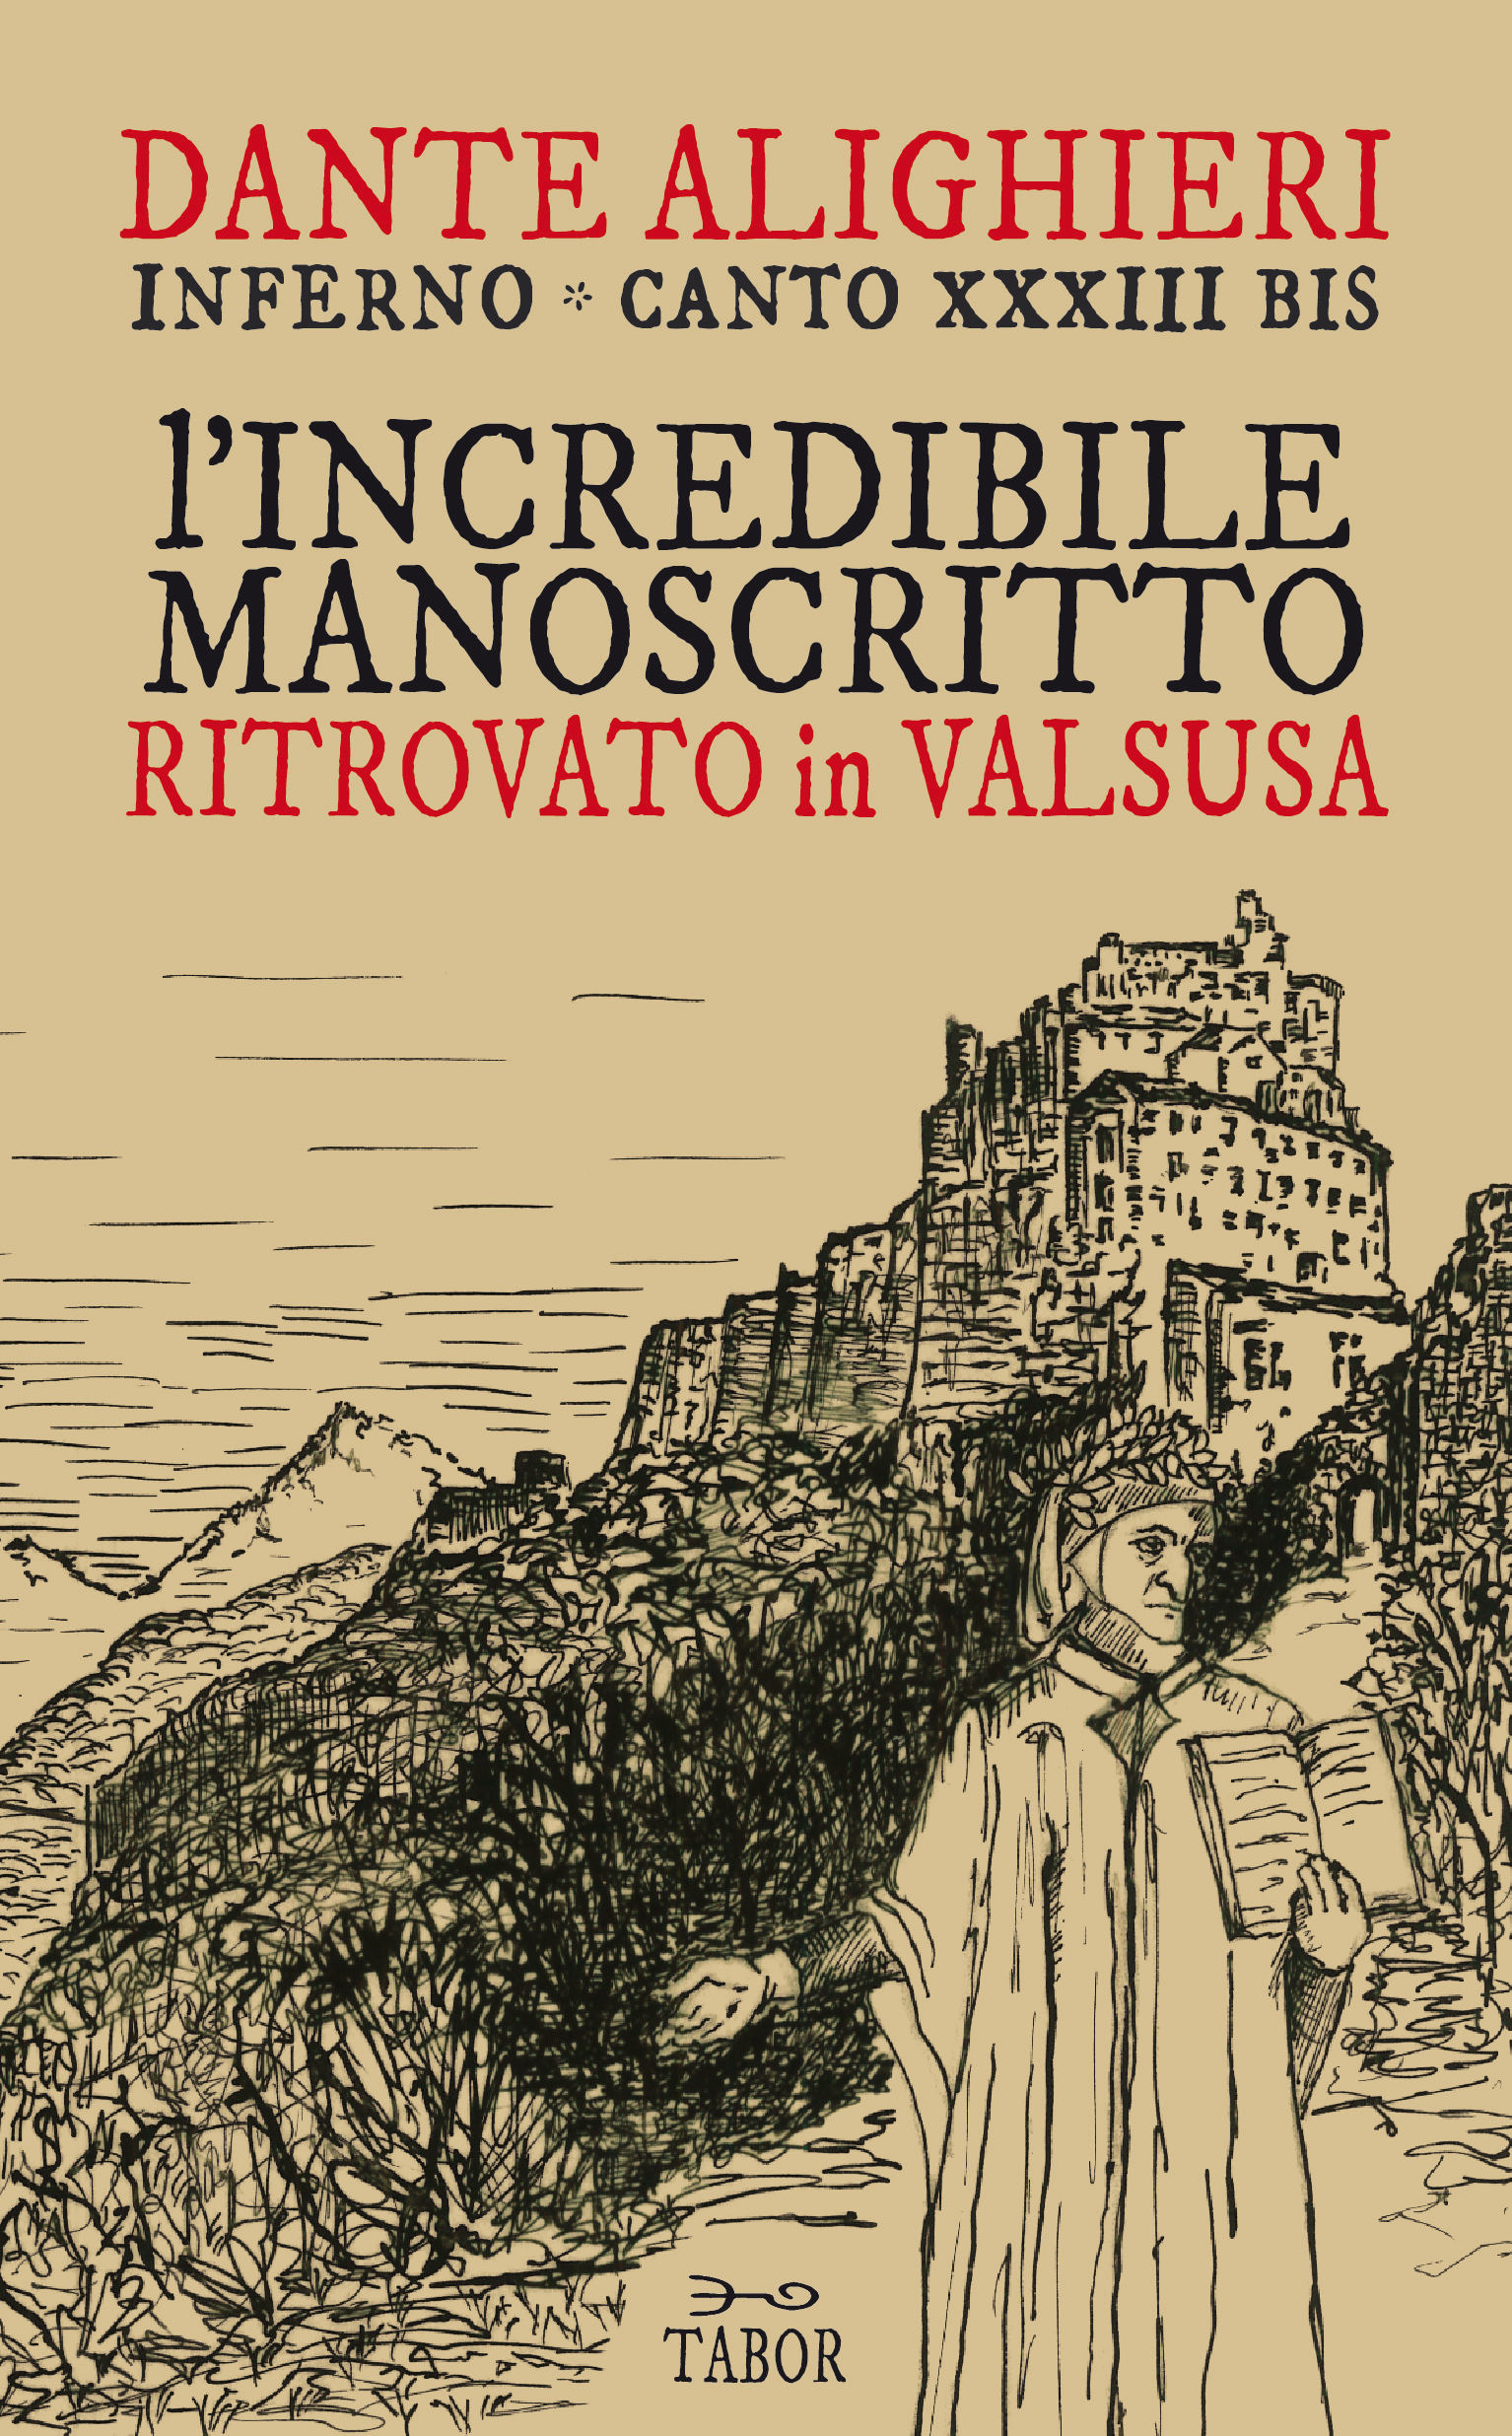 Inferno, Canto XXXIII bis - L’incredibile manoscritto ritrovato in Valsusa Book Cover